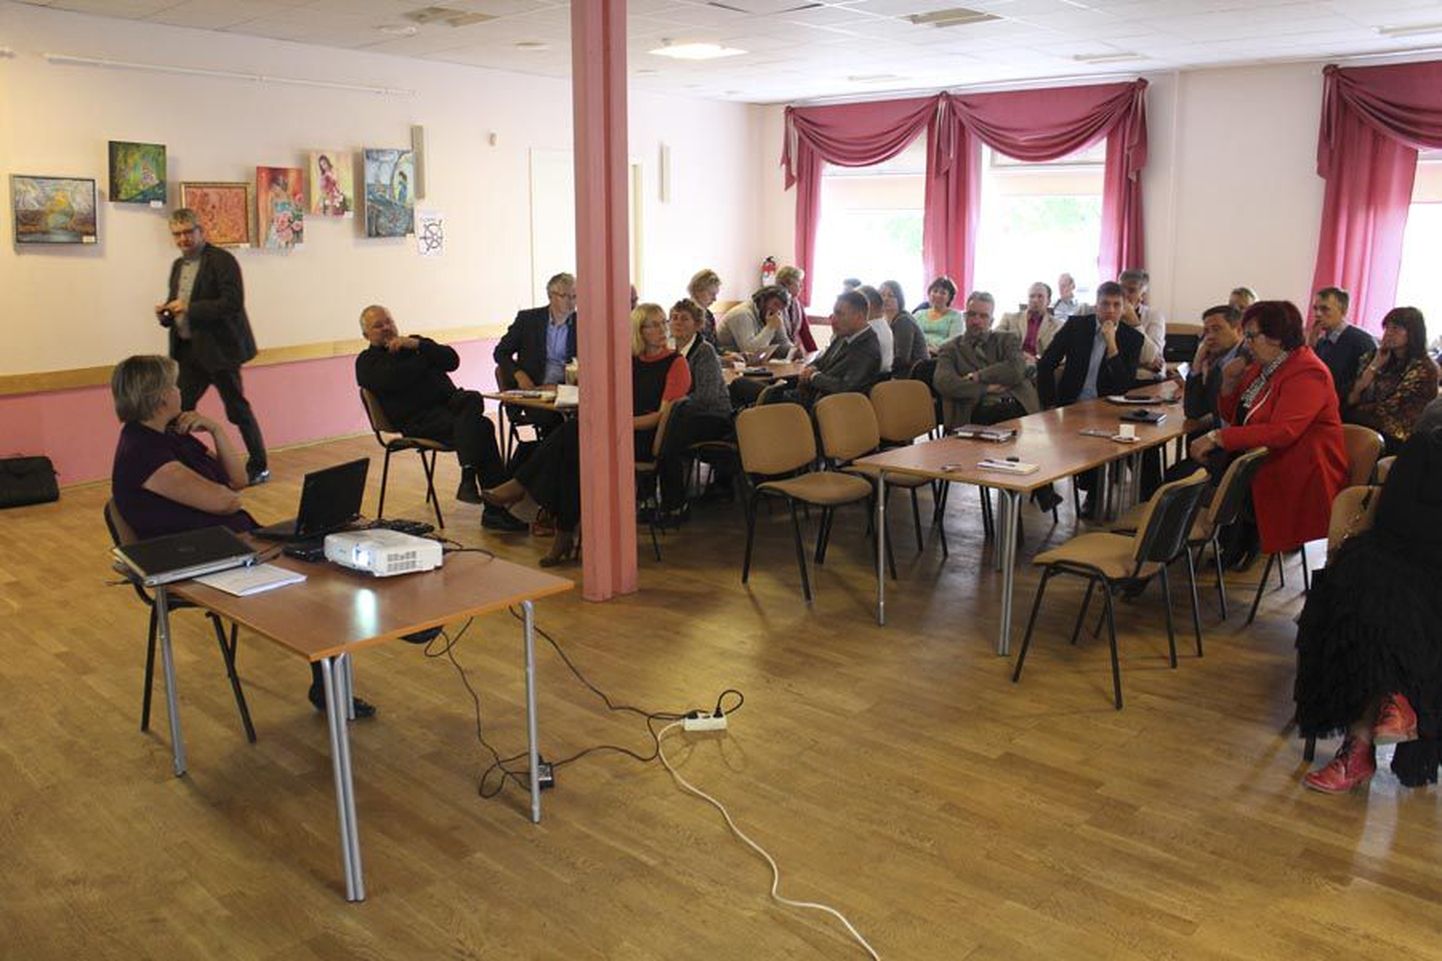 Võhmasse Viljandimaa omavalitsuste liidu korraldatud koosolekule oli sotsiaalministeeriumi esindajat kuulama tulnud kaheksa Viljandimaa linna ja valla esindajat 12-st. Korraldaja sõnul tõestas see, et huvi pagulasteema vastu on suur.